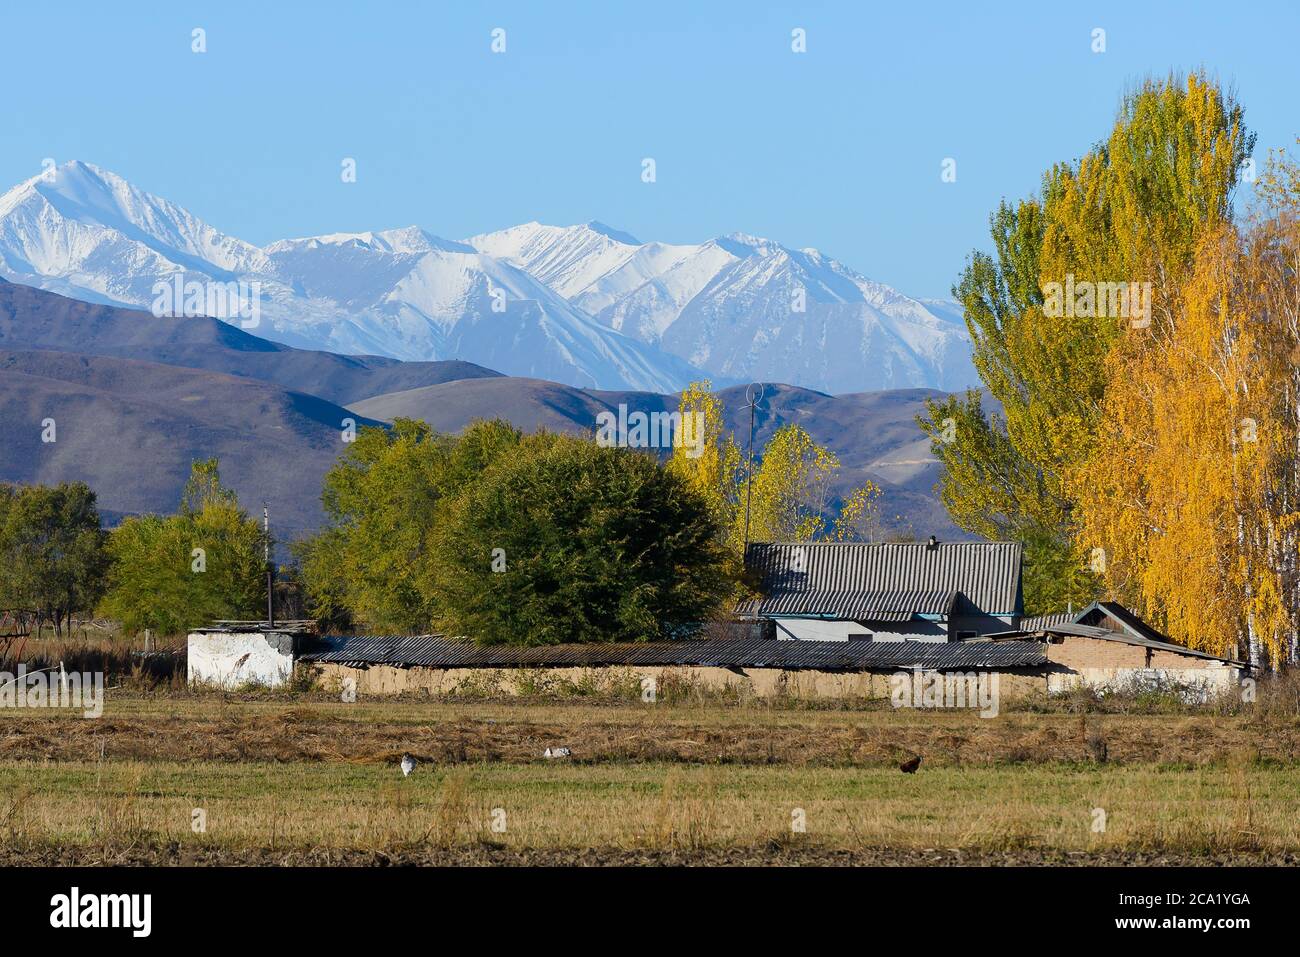 Campo Kirguistán en Asia Central con montañas cubiertas de nieve detrás. Zona rural con cadena montañosa con nieve detrás. Día soleado en temporada de otoño. Foto de stock